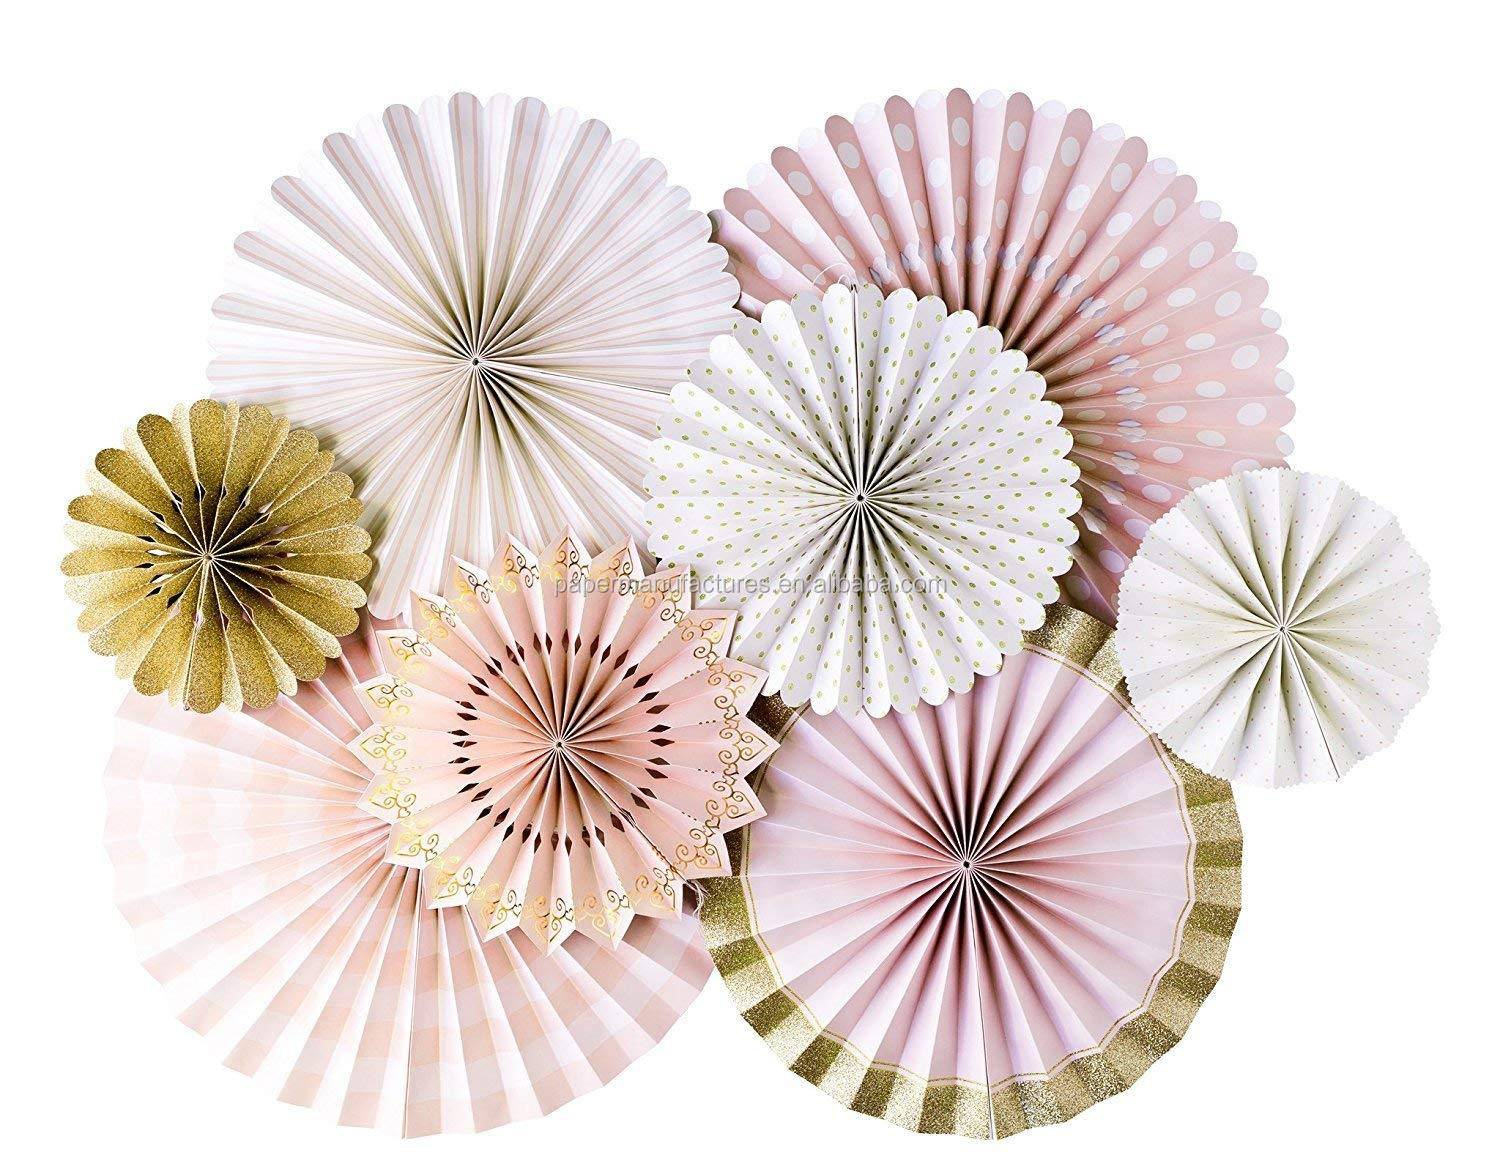 Веер для декора из бумаги своими руками. фанты для декора: украшаем праздник разноцветными веерами. как сделать бумажный веер легко и просто